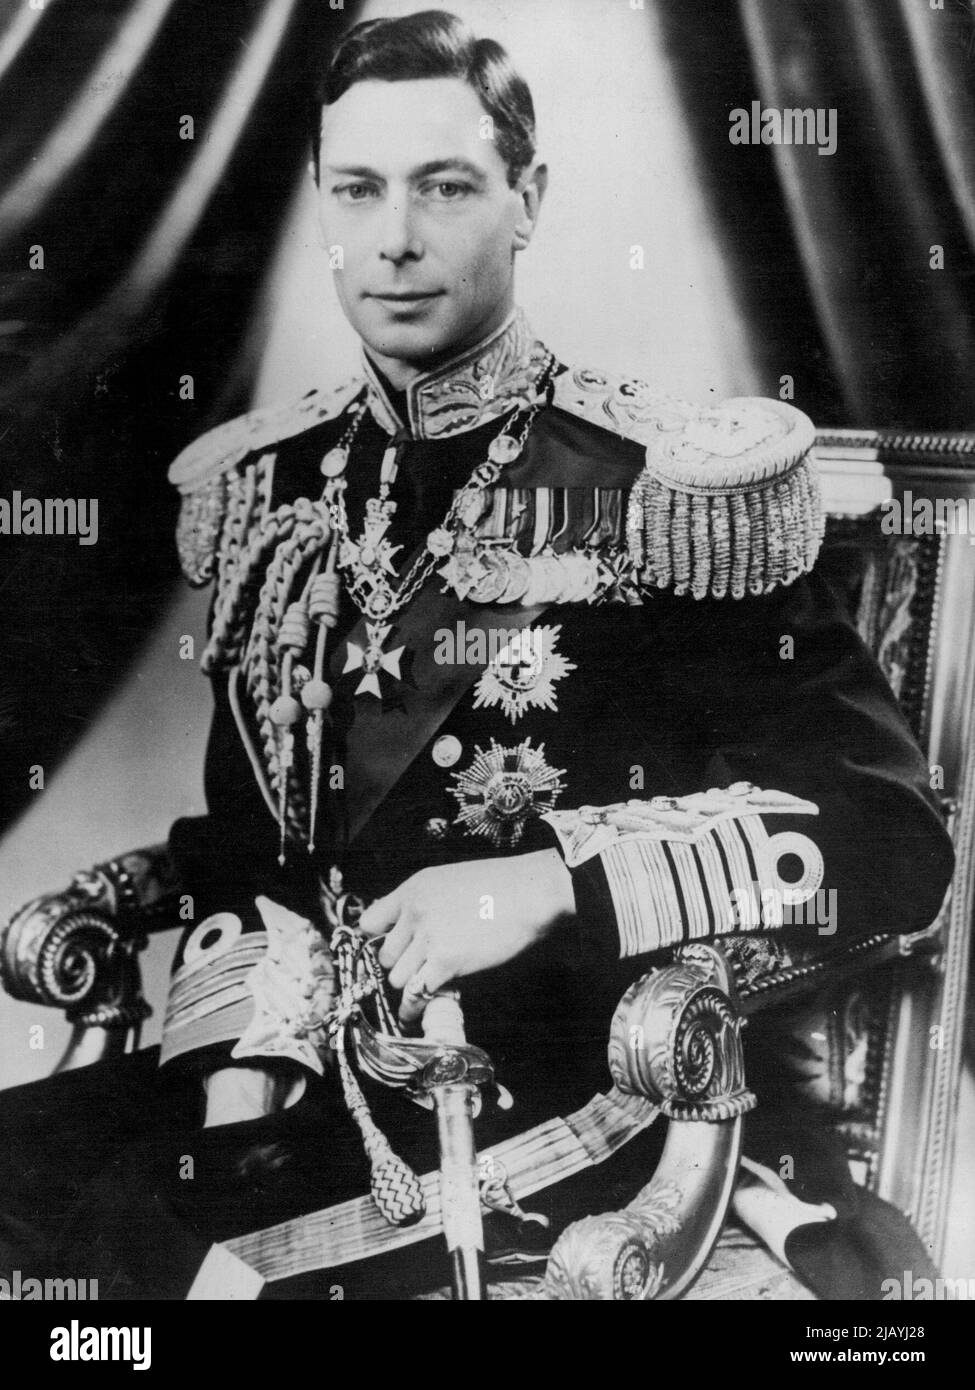 Immagine speciale dell'incoronazione del re: Una fotografia speciale dell'incoronazione del re Giorgio VI Il Re indossa l'uniforme di un Ammiraglio della flotta. Settembre 27, 1939. Foto Stock